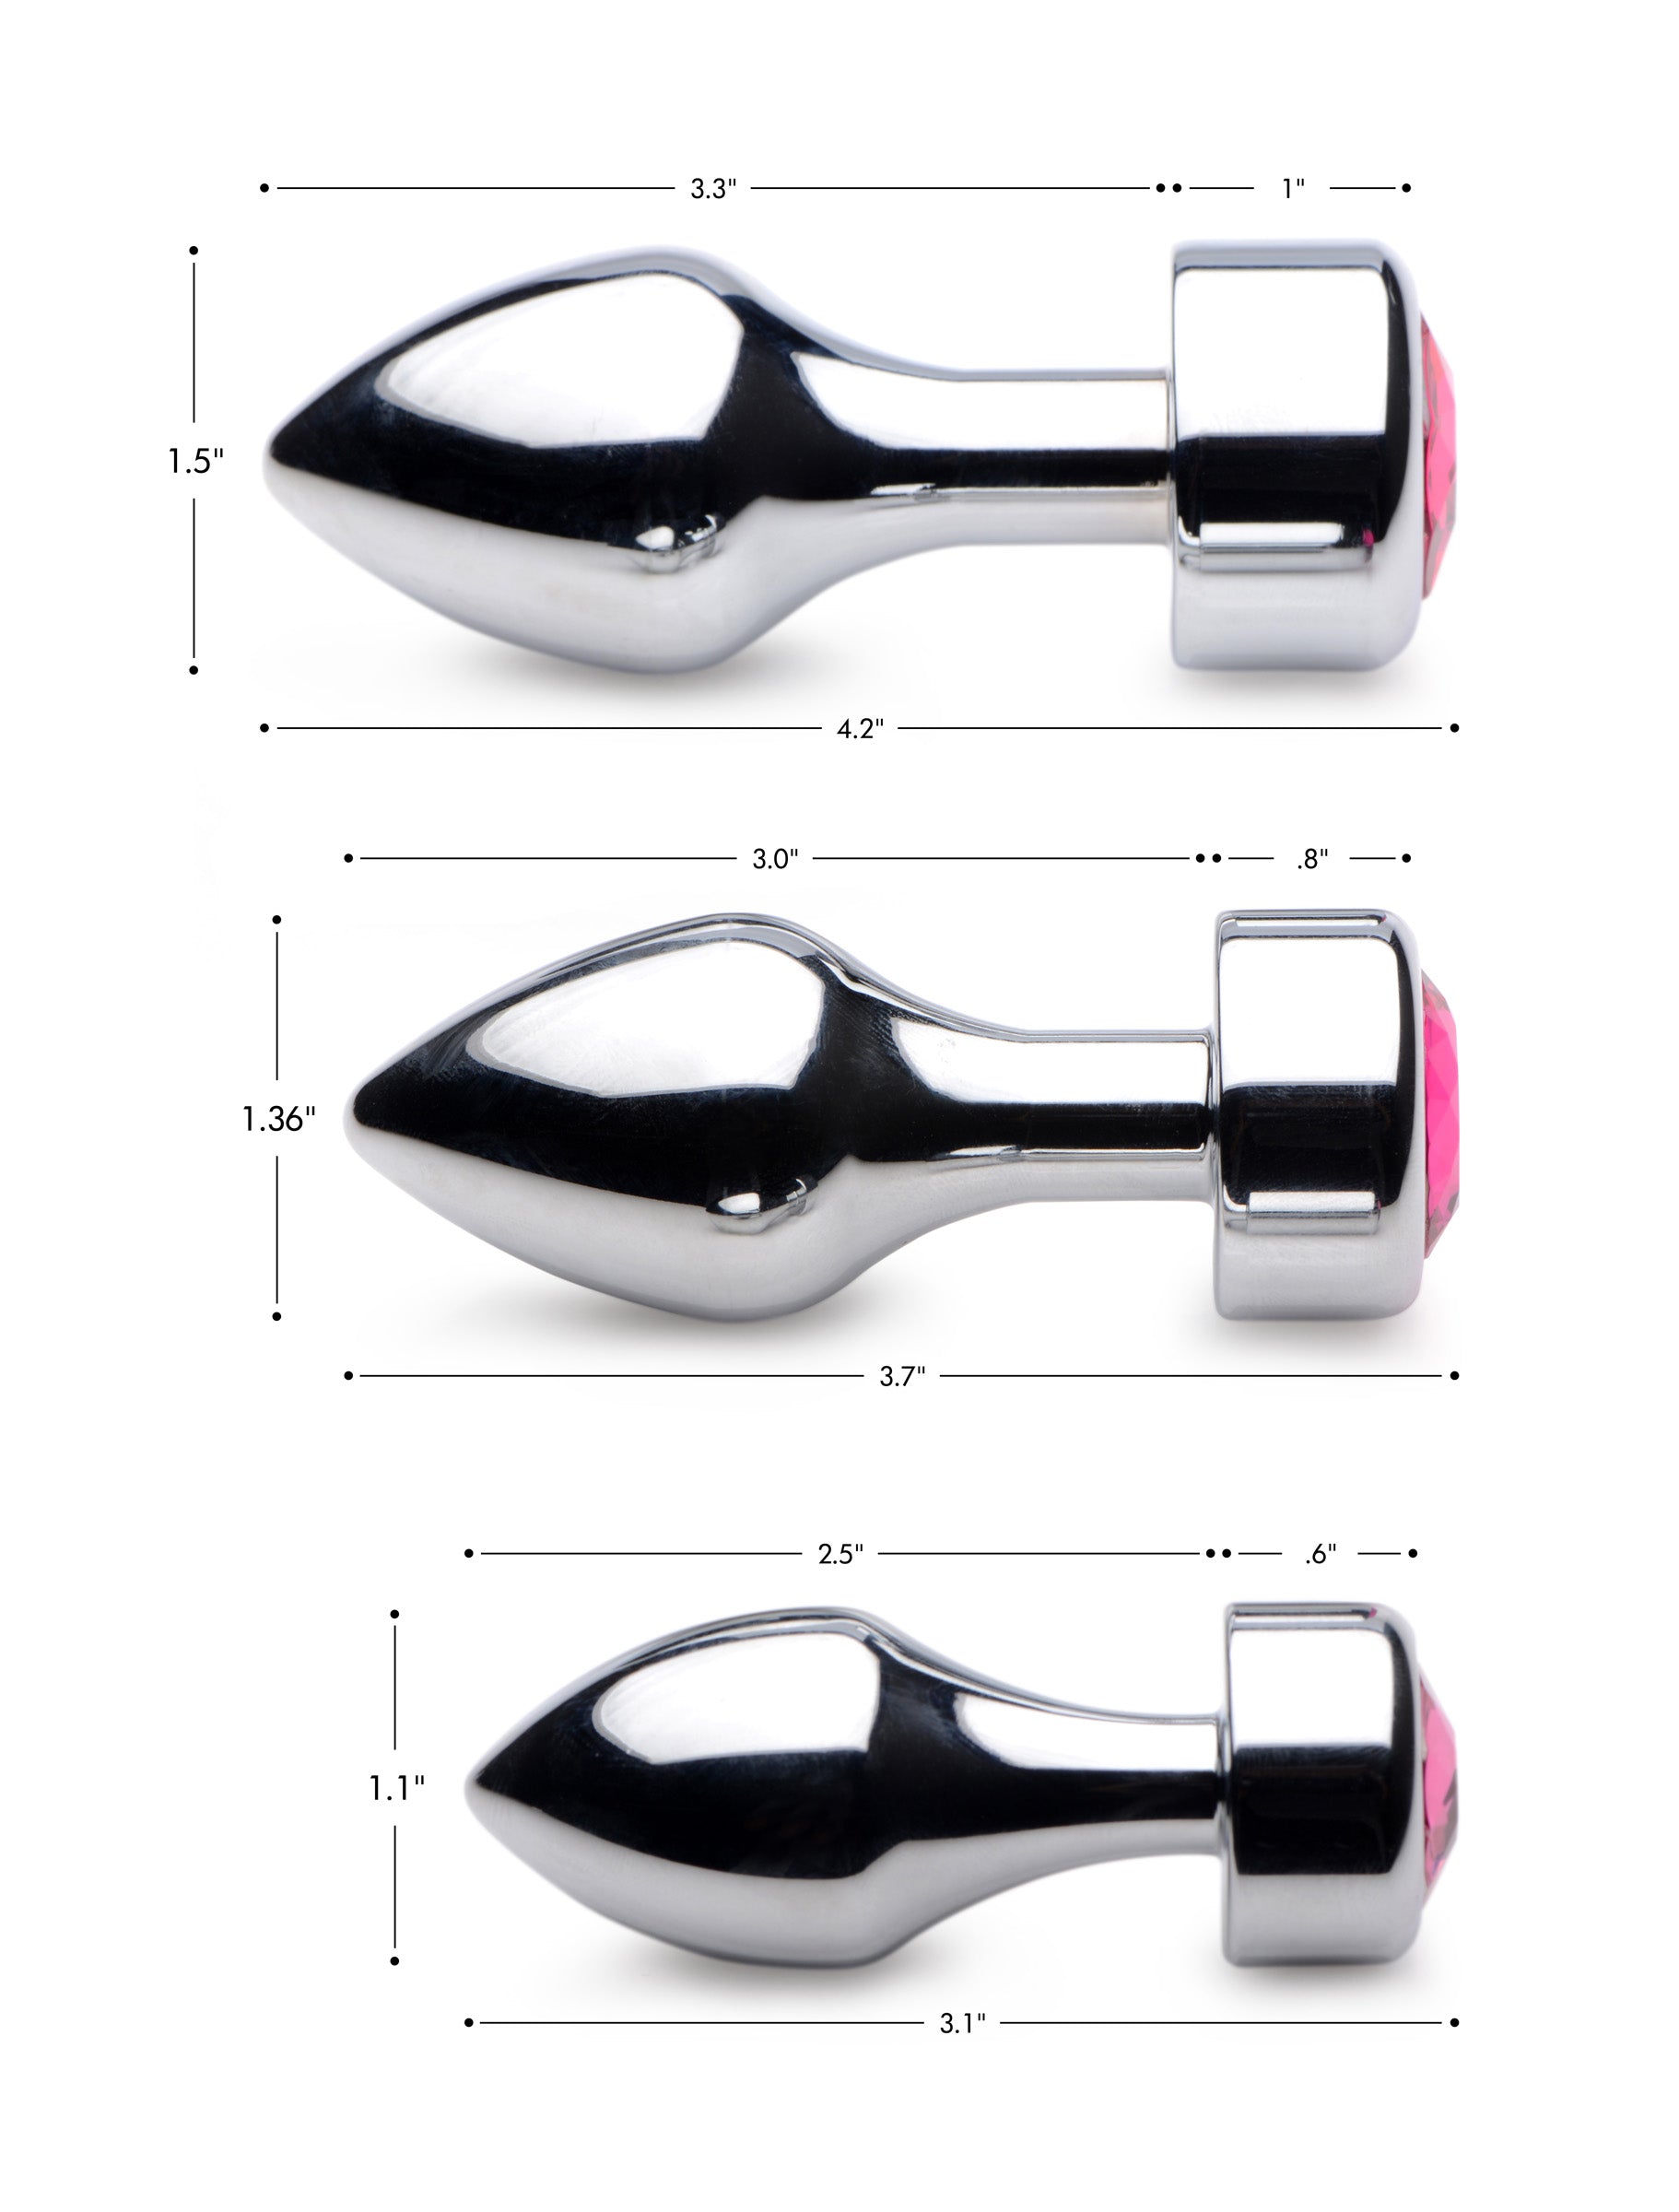 Hot Pink Gem Weighted Anal Plug - Medium - UABDSM